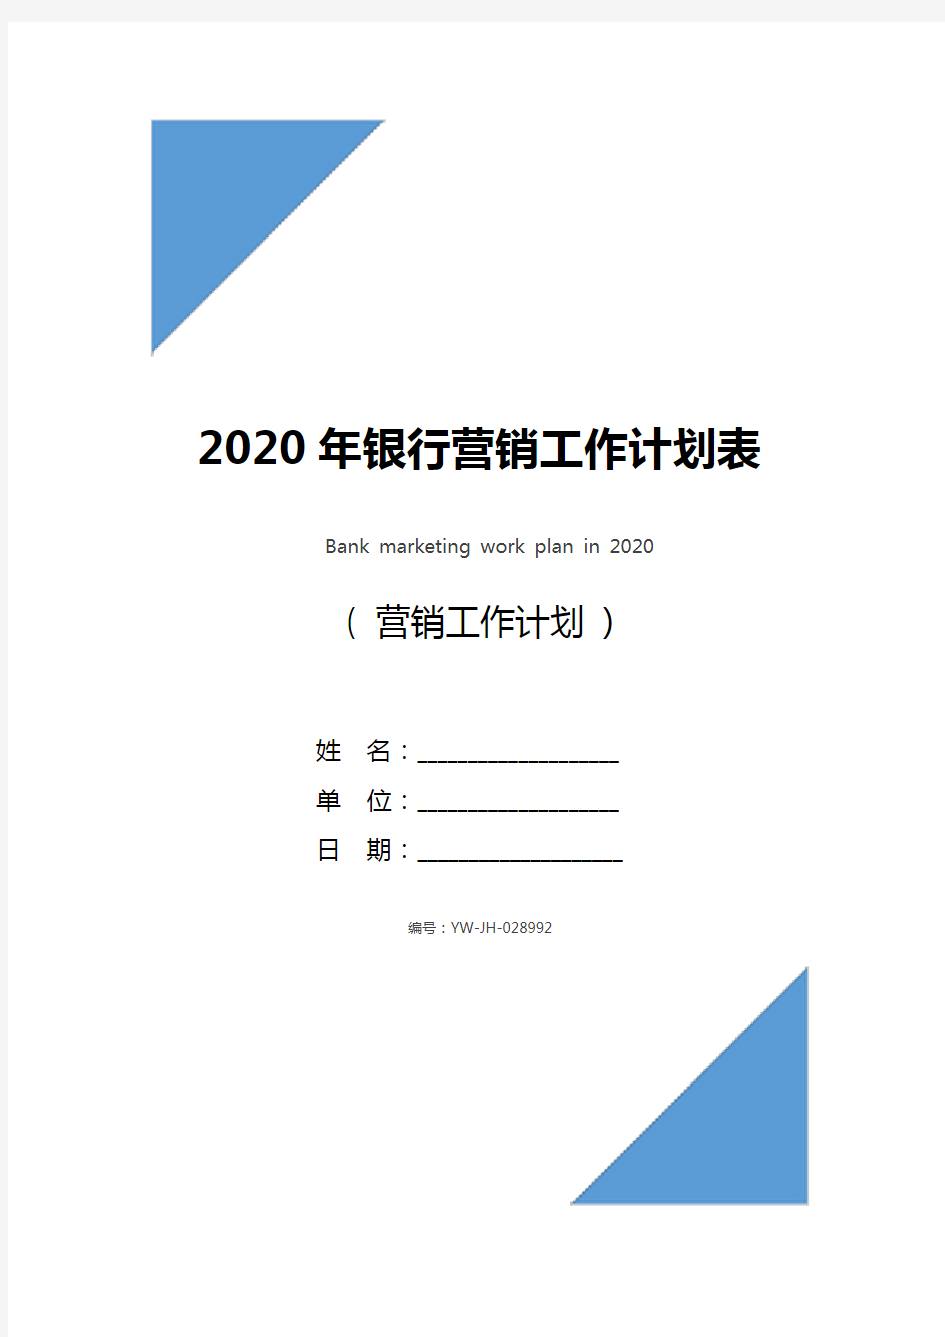 2020年银行营销工作计划表